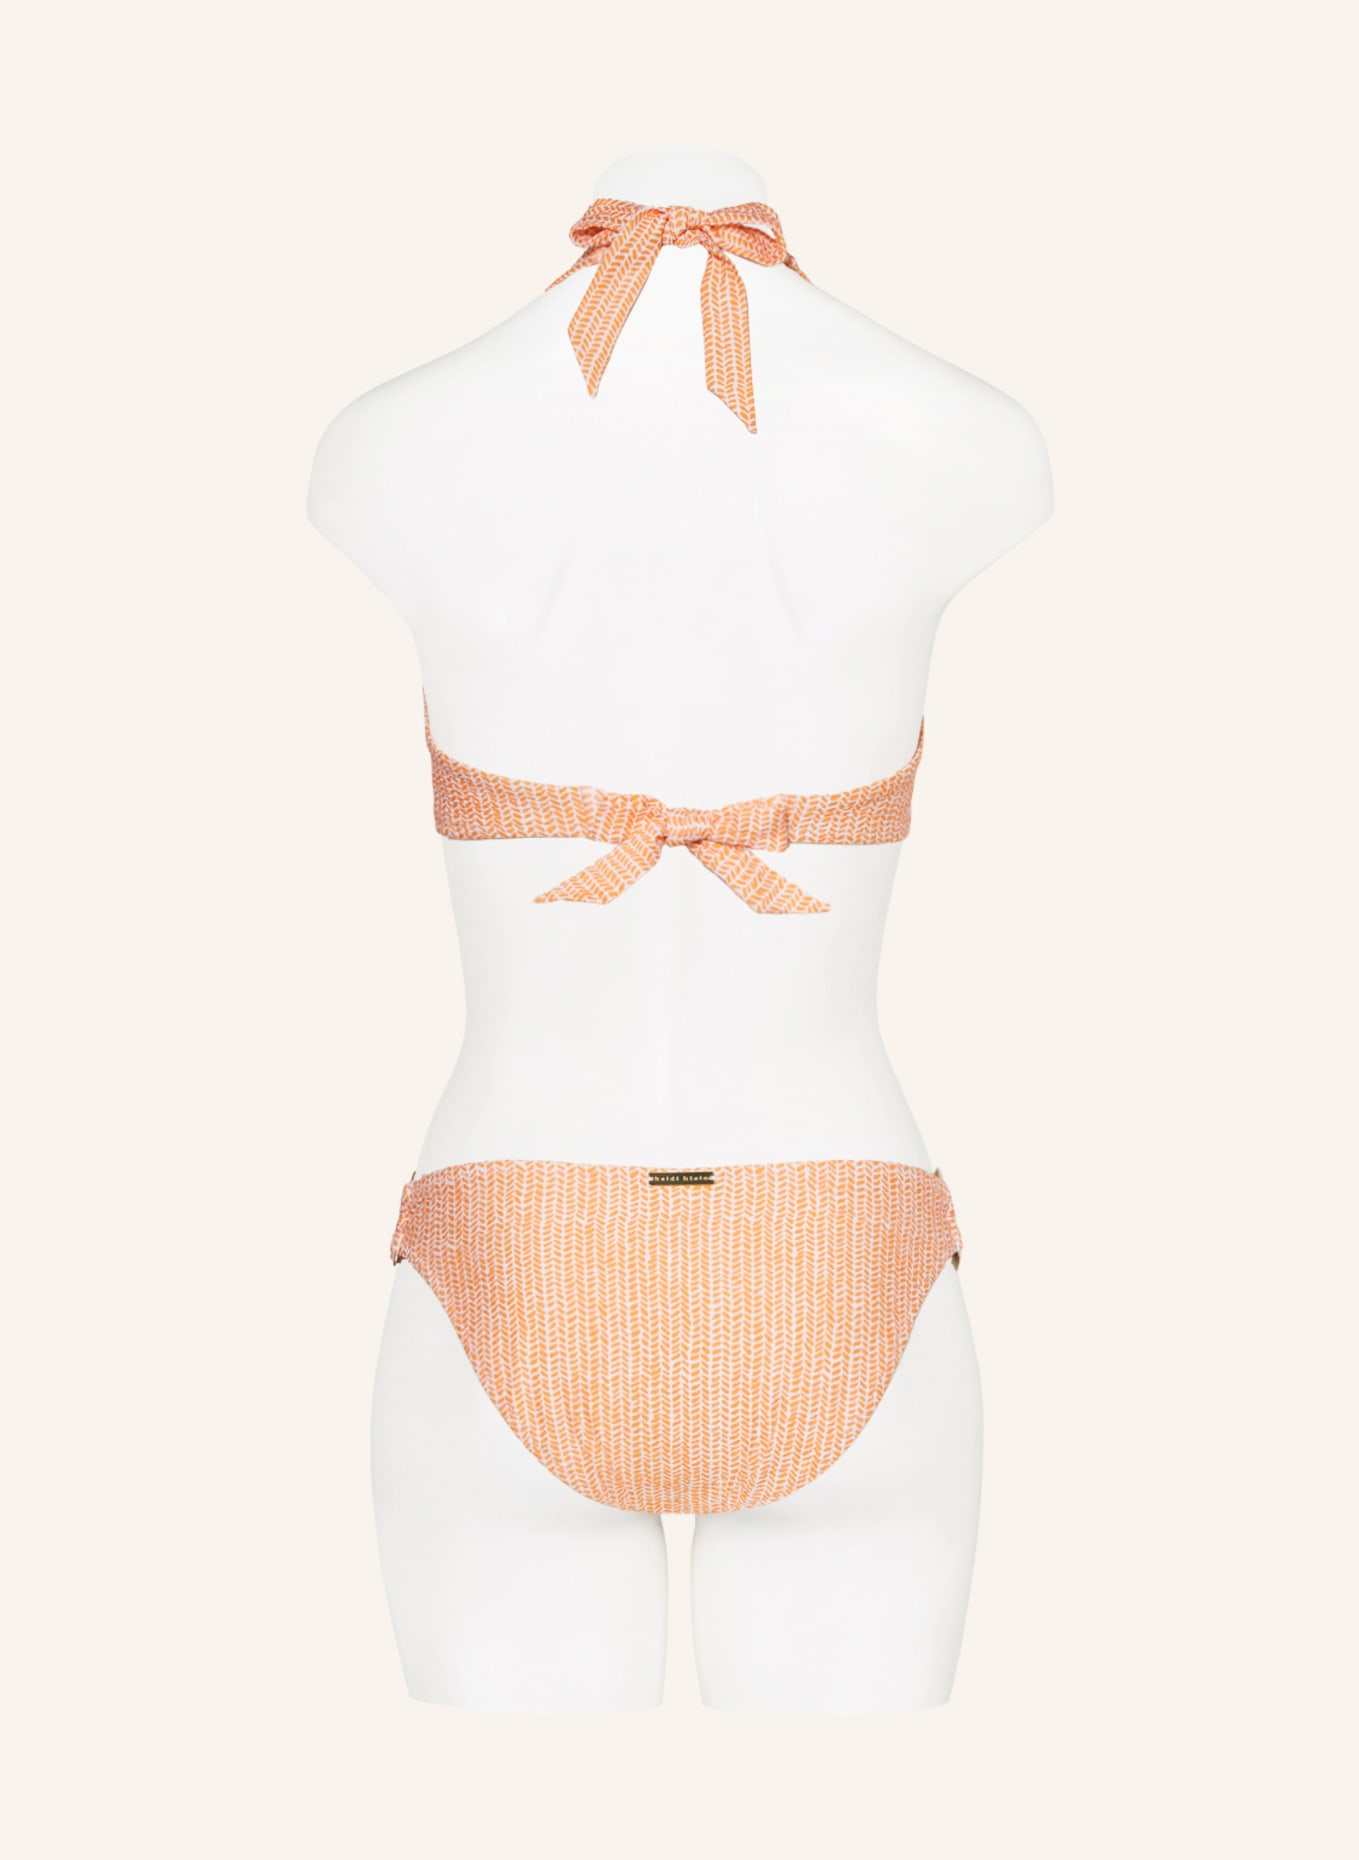 heidi klein Neckholder-Bikini-Top WALDORF WINDS, Farbe: ORANGE/ ECRU (Bild 3)